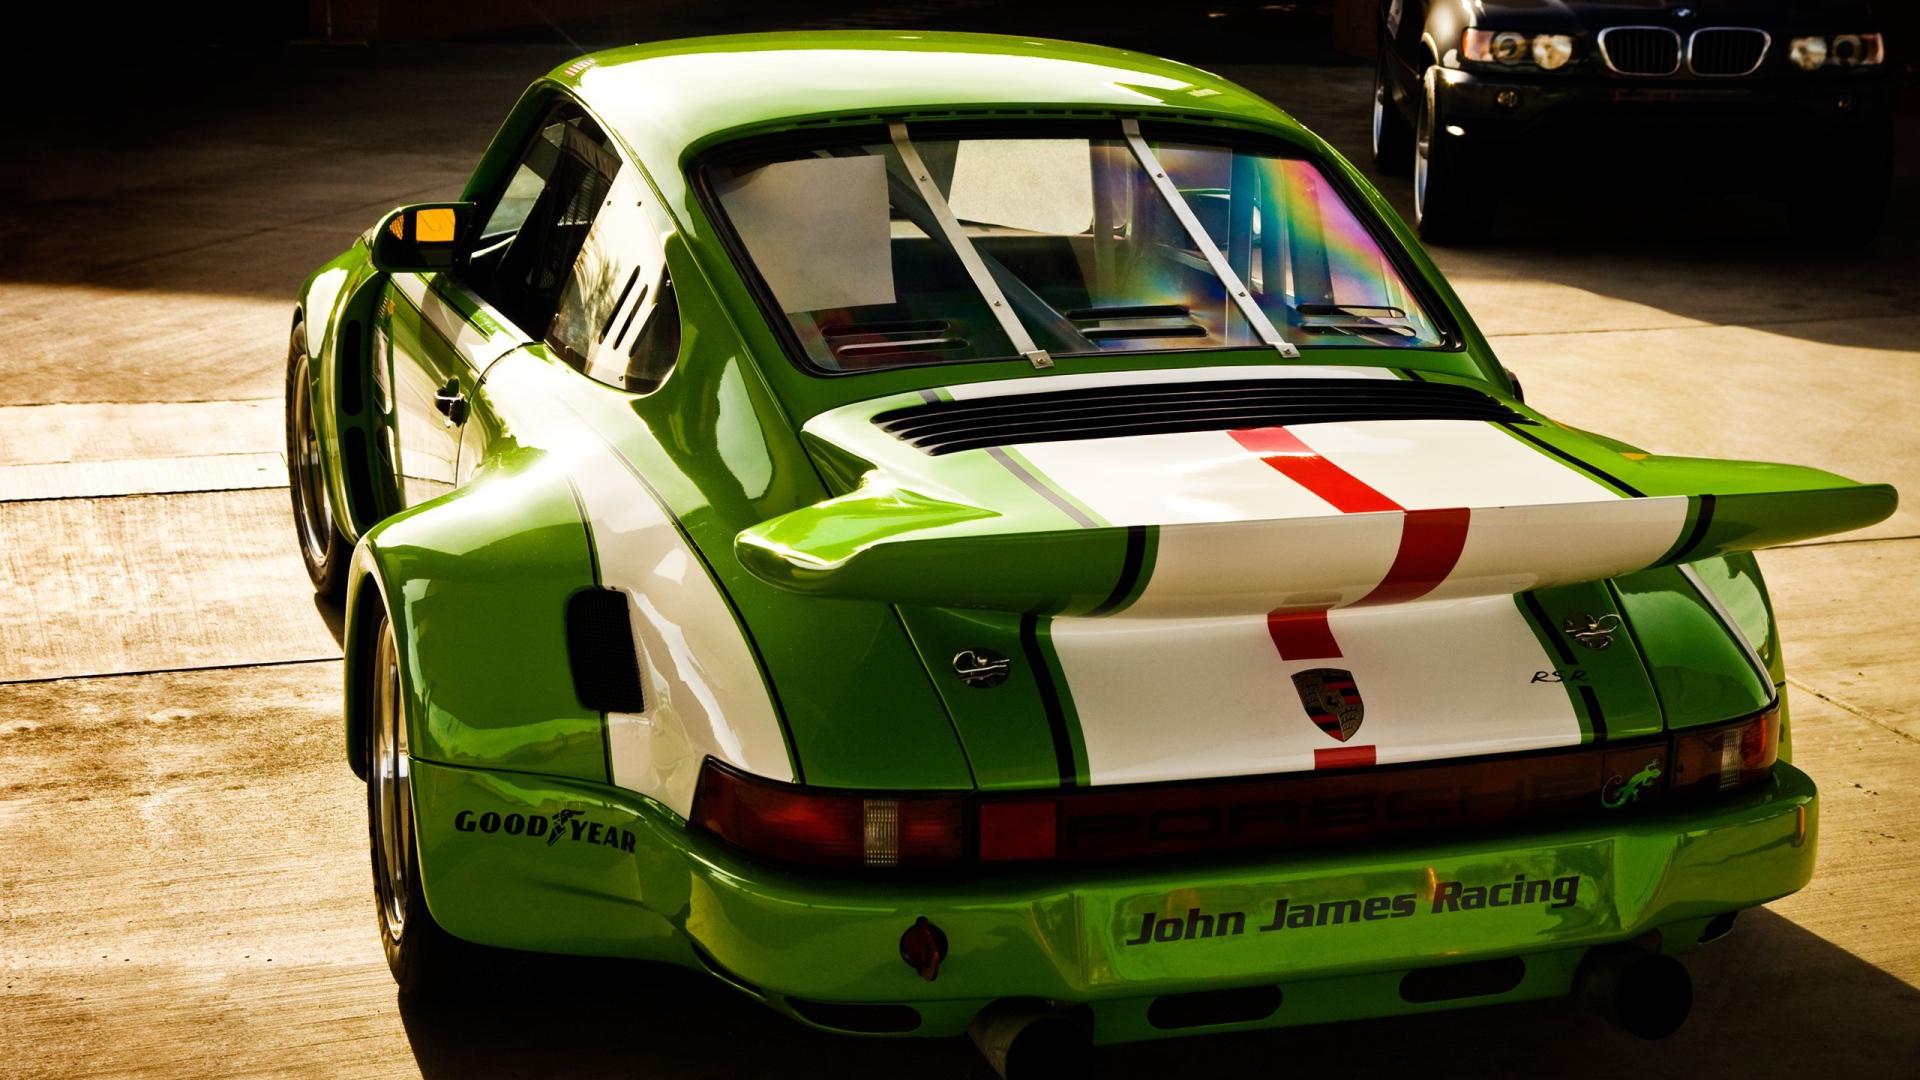 Автомобиль Porsche 911 для уличных гонок